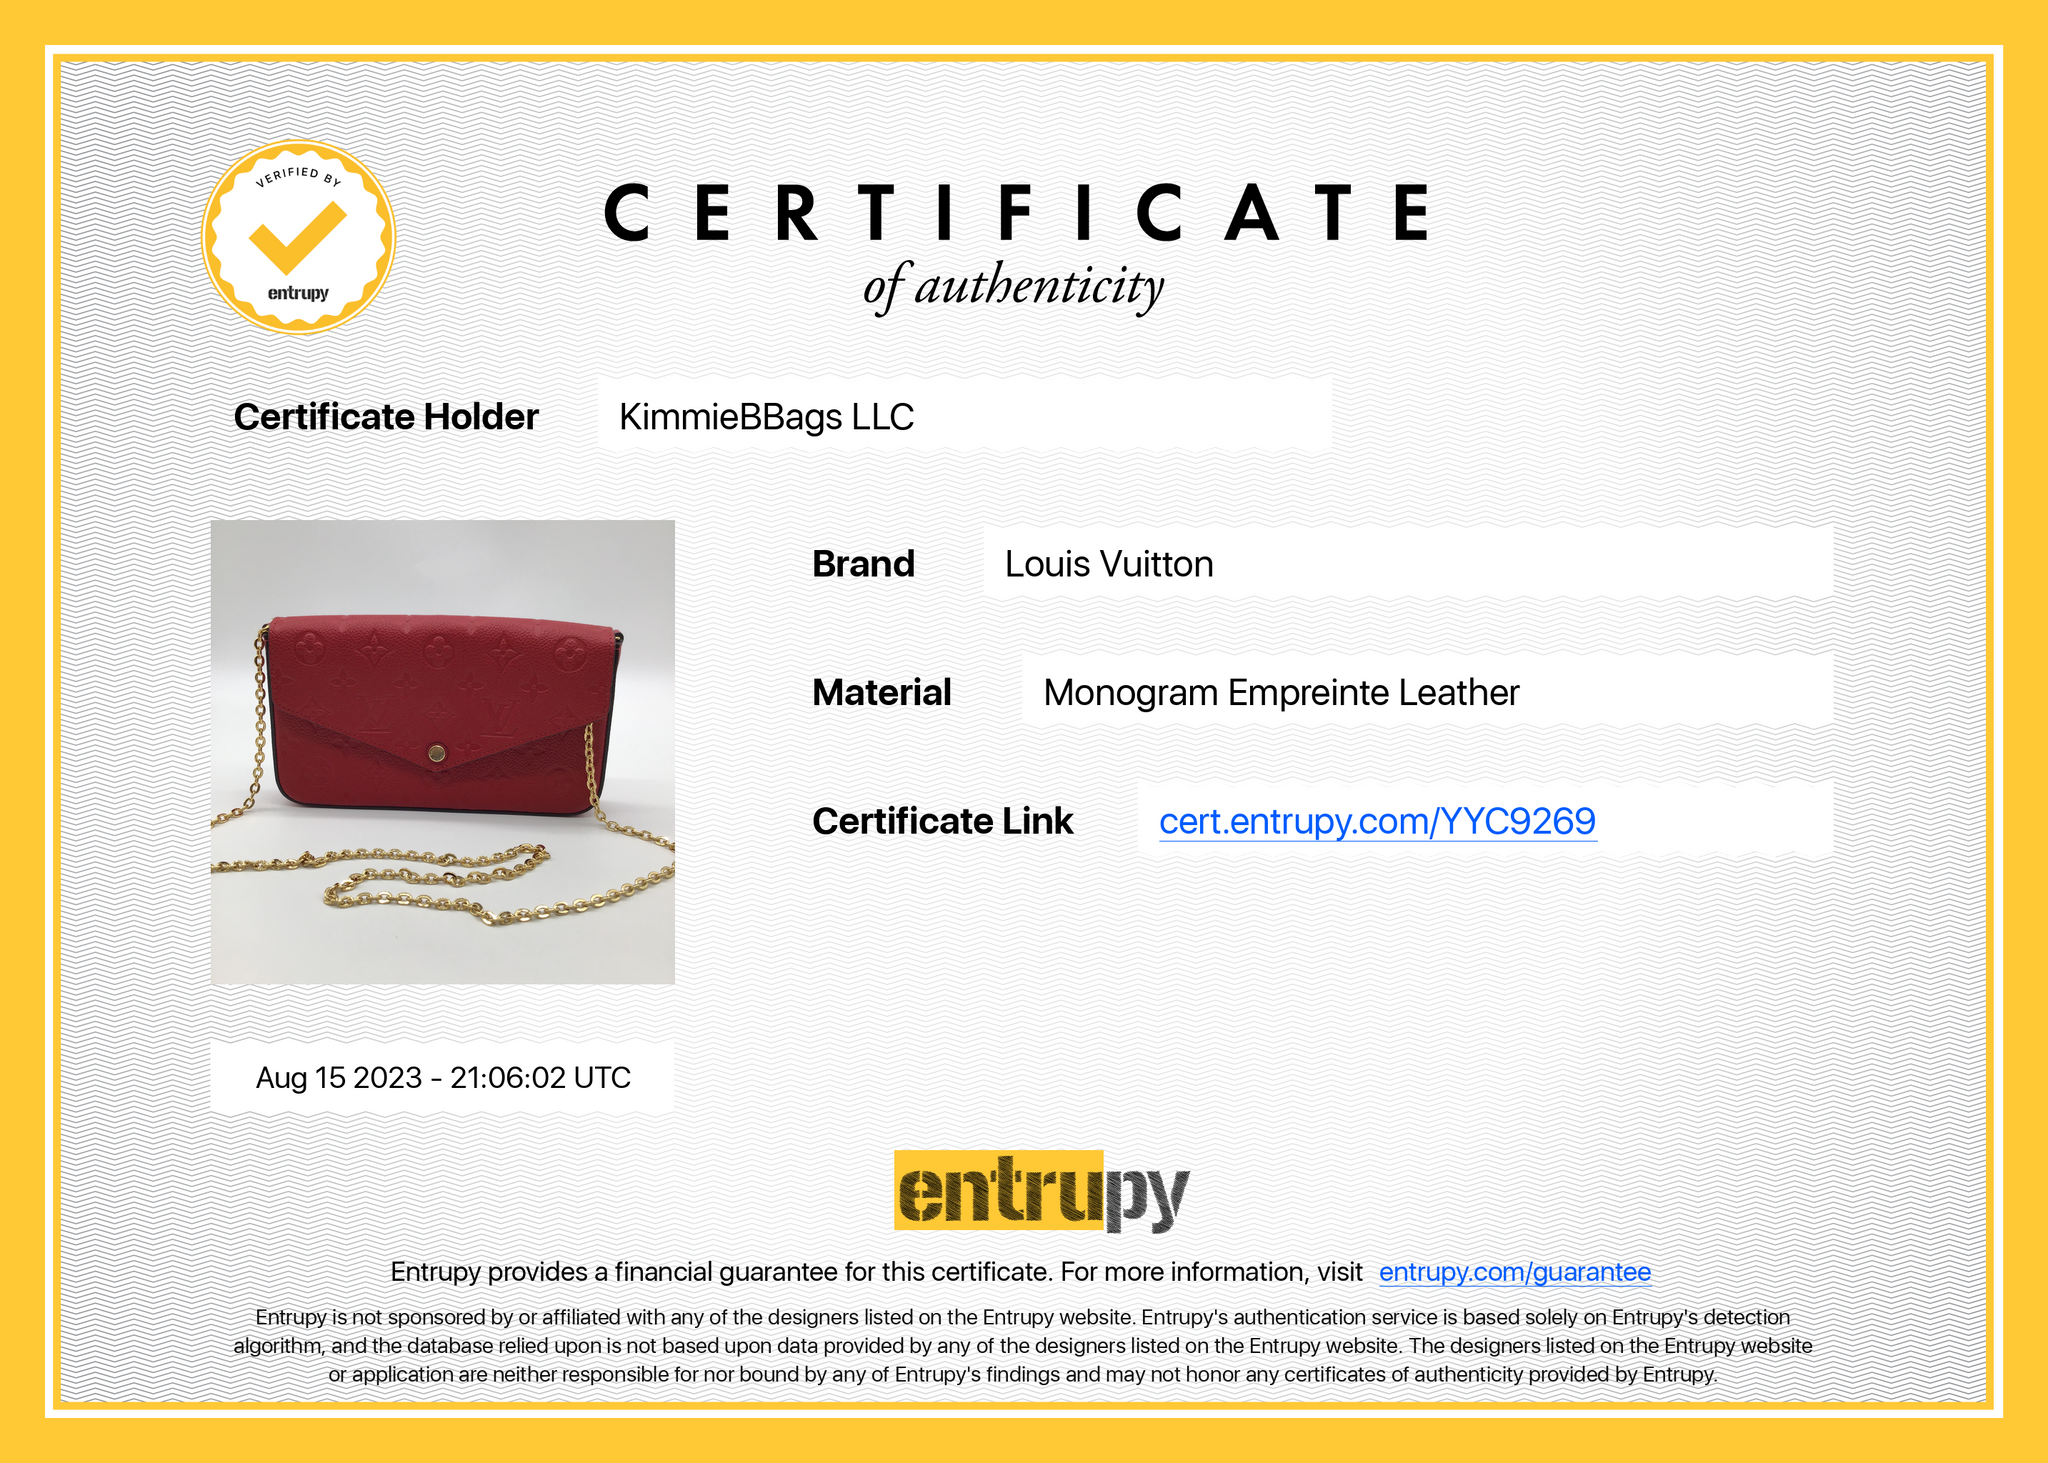 Louis Vuitton Red Leather Monogram Empreinte Felicie Zip Pouch Insert Case